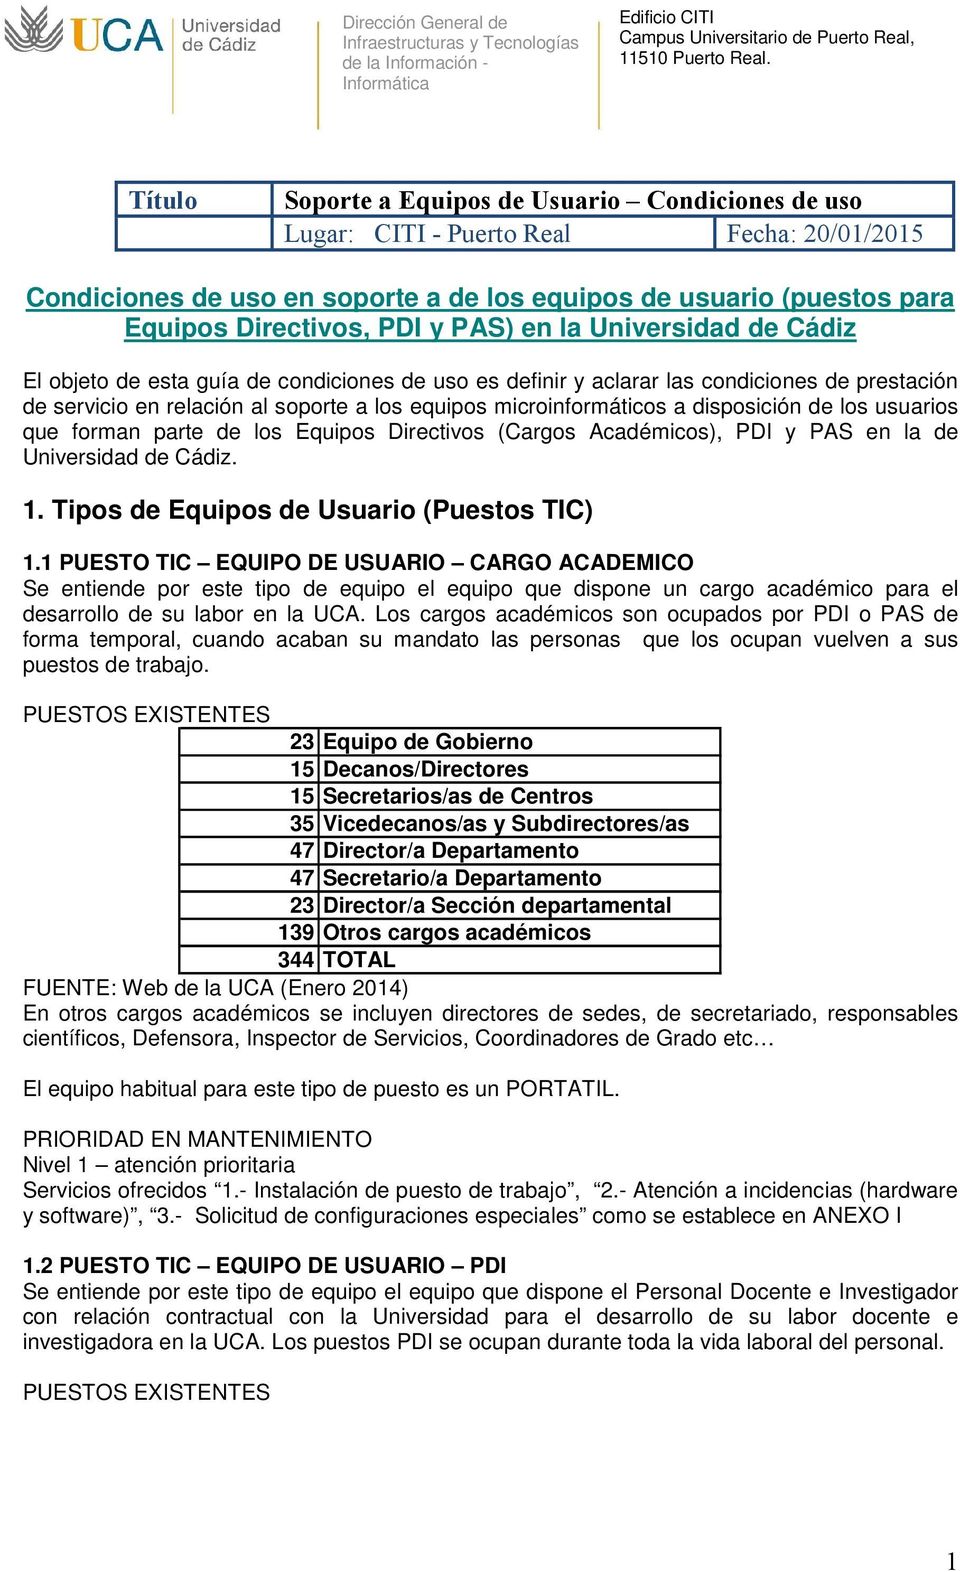 PAS) en la Universidad de Cádiz El objeto de esta guía de condiciones de uso es definir y aclarar las condiciones de prestación de servicio en relación al soporte a los equipos microinformáticos a